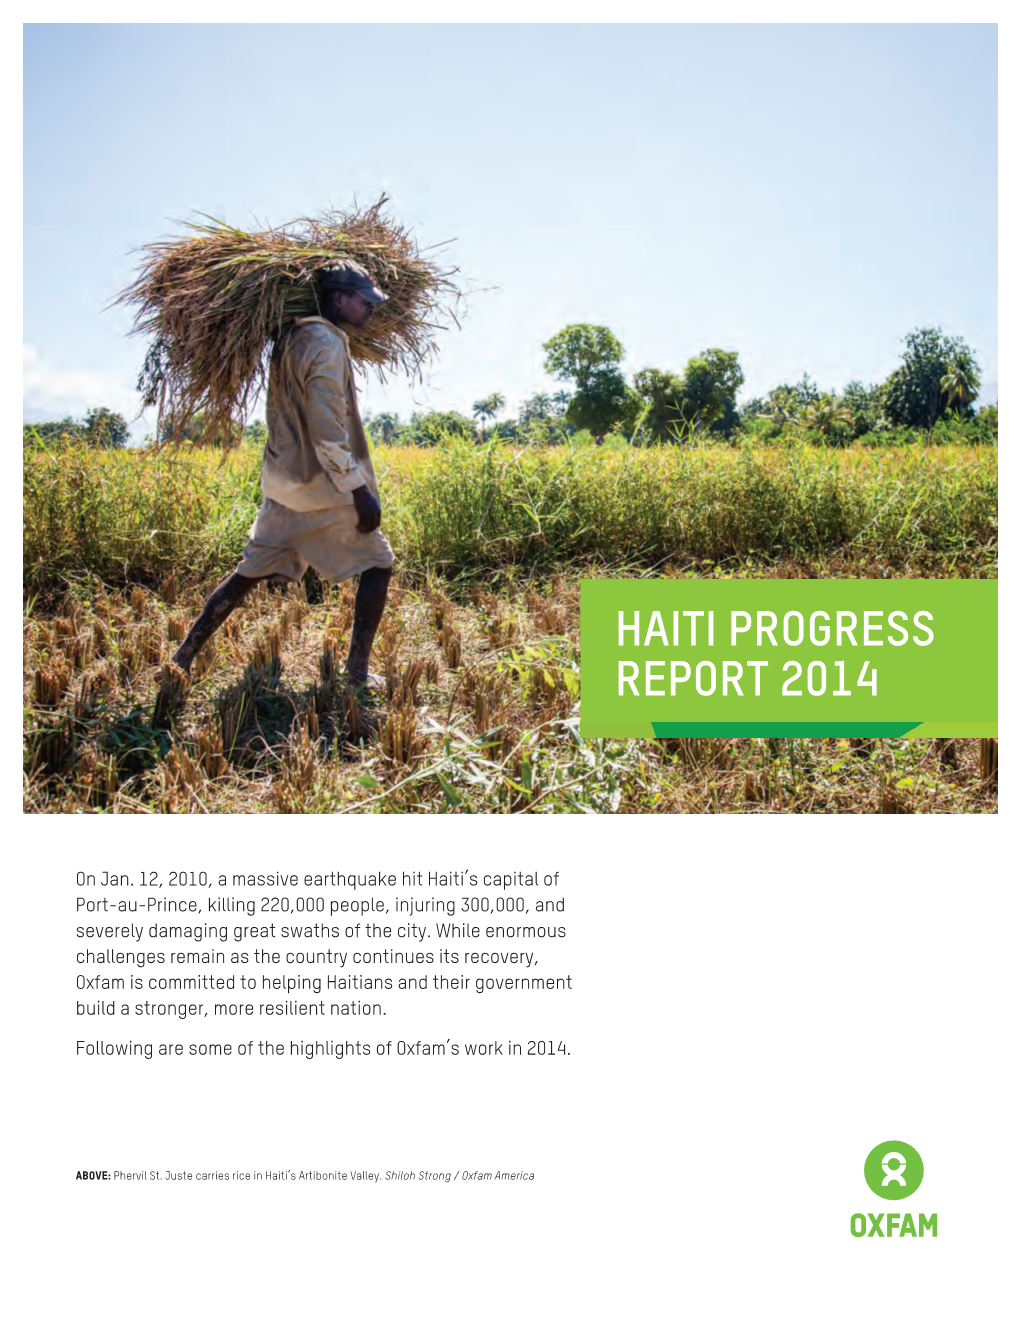 Haiti Progress Report 2014